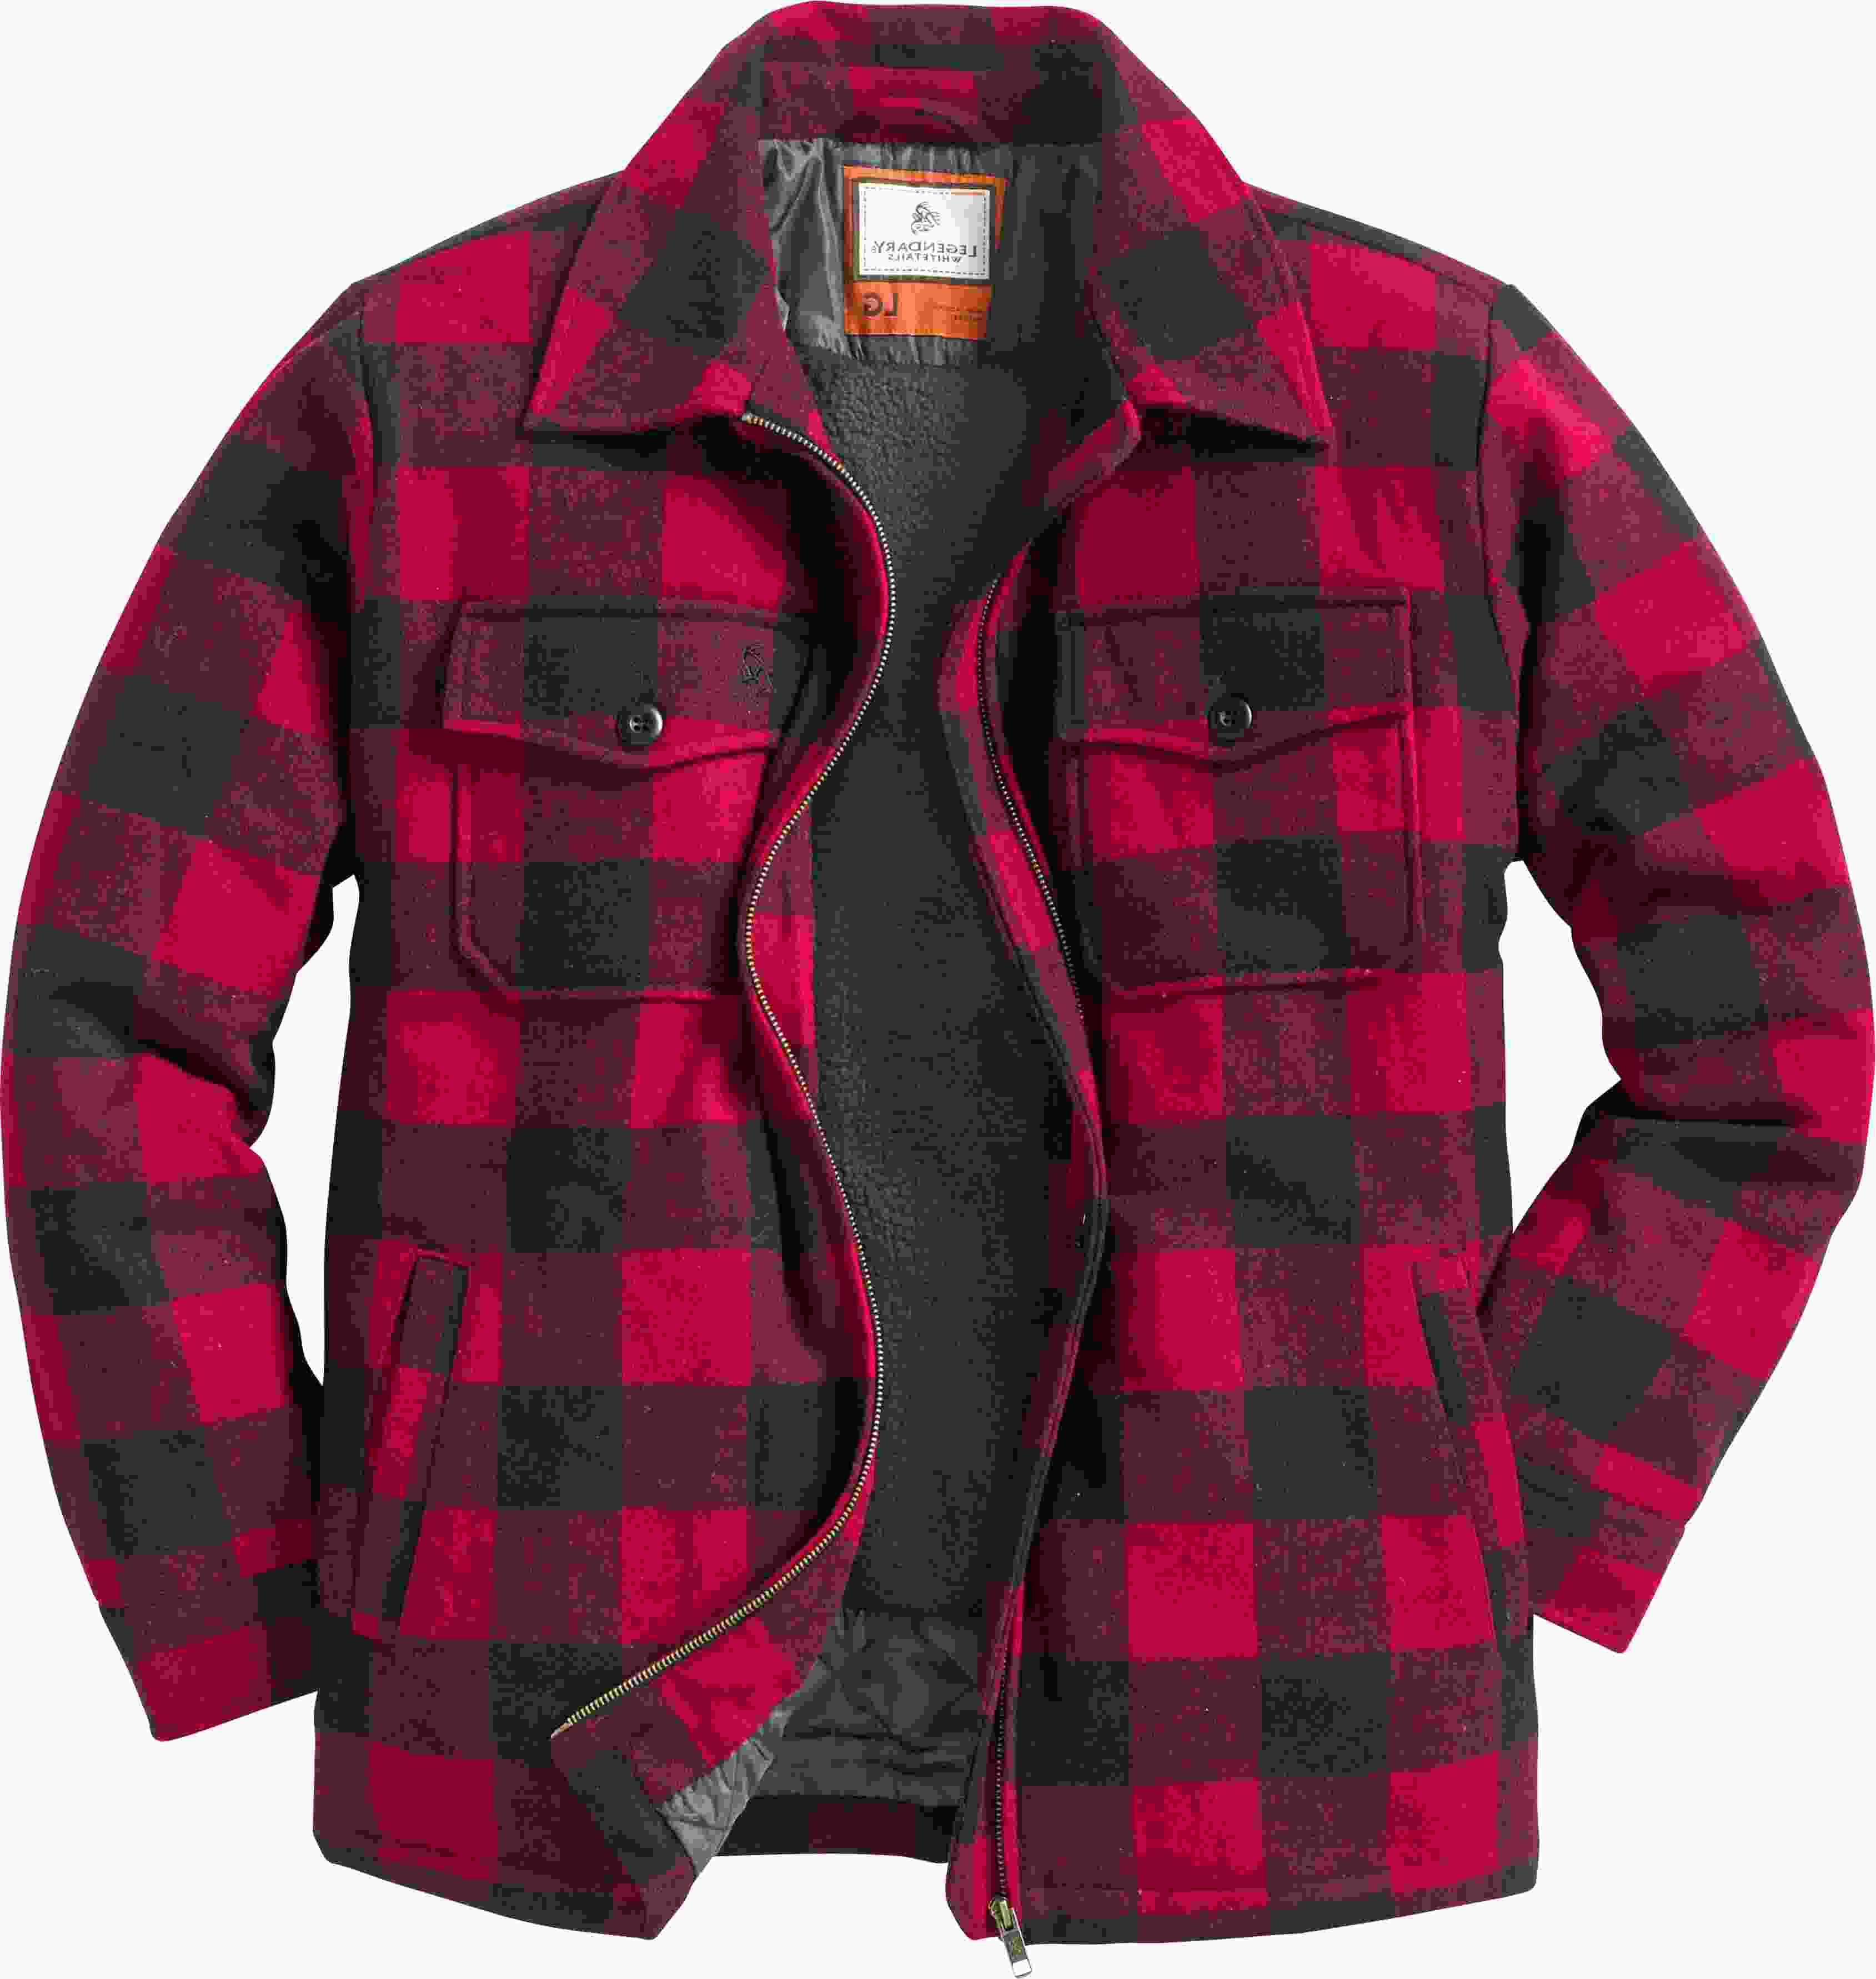 Lumberjack Plaid Jacket for sale in UK | 59 used Lumberjack Plaid Jackets